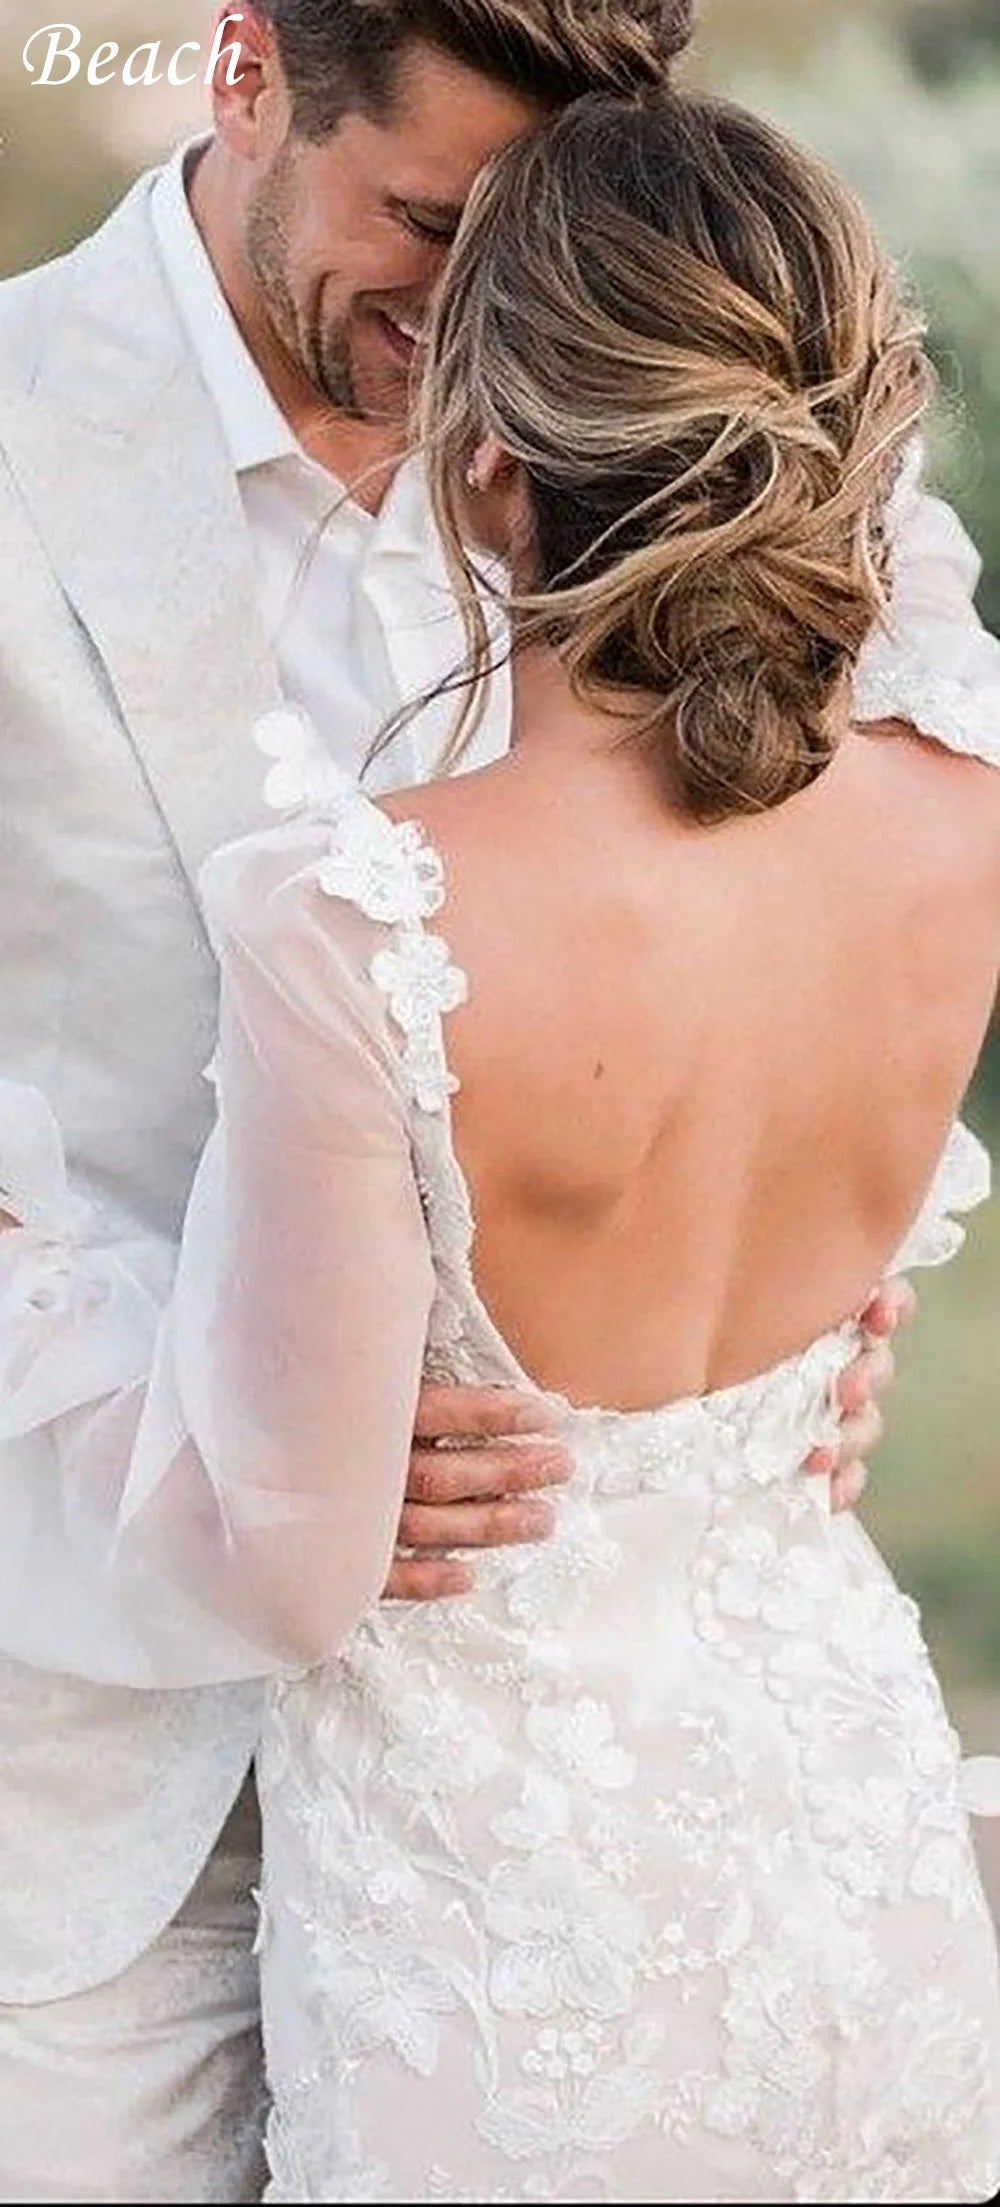 فساتين زفاف صغيرة بياقة مربعة من BEACH Boho فستان عروس قصير مزين بالدانتيل بدون ظهر وأكمام منتفخة فستان زفاف جميل